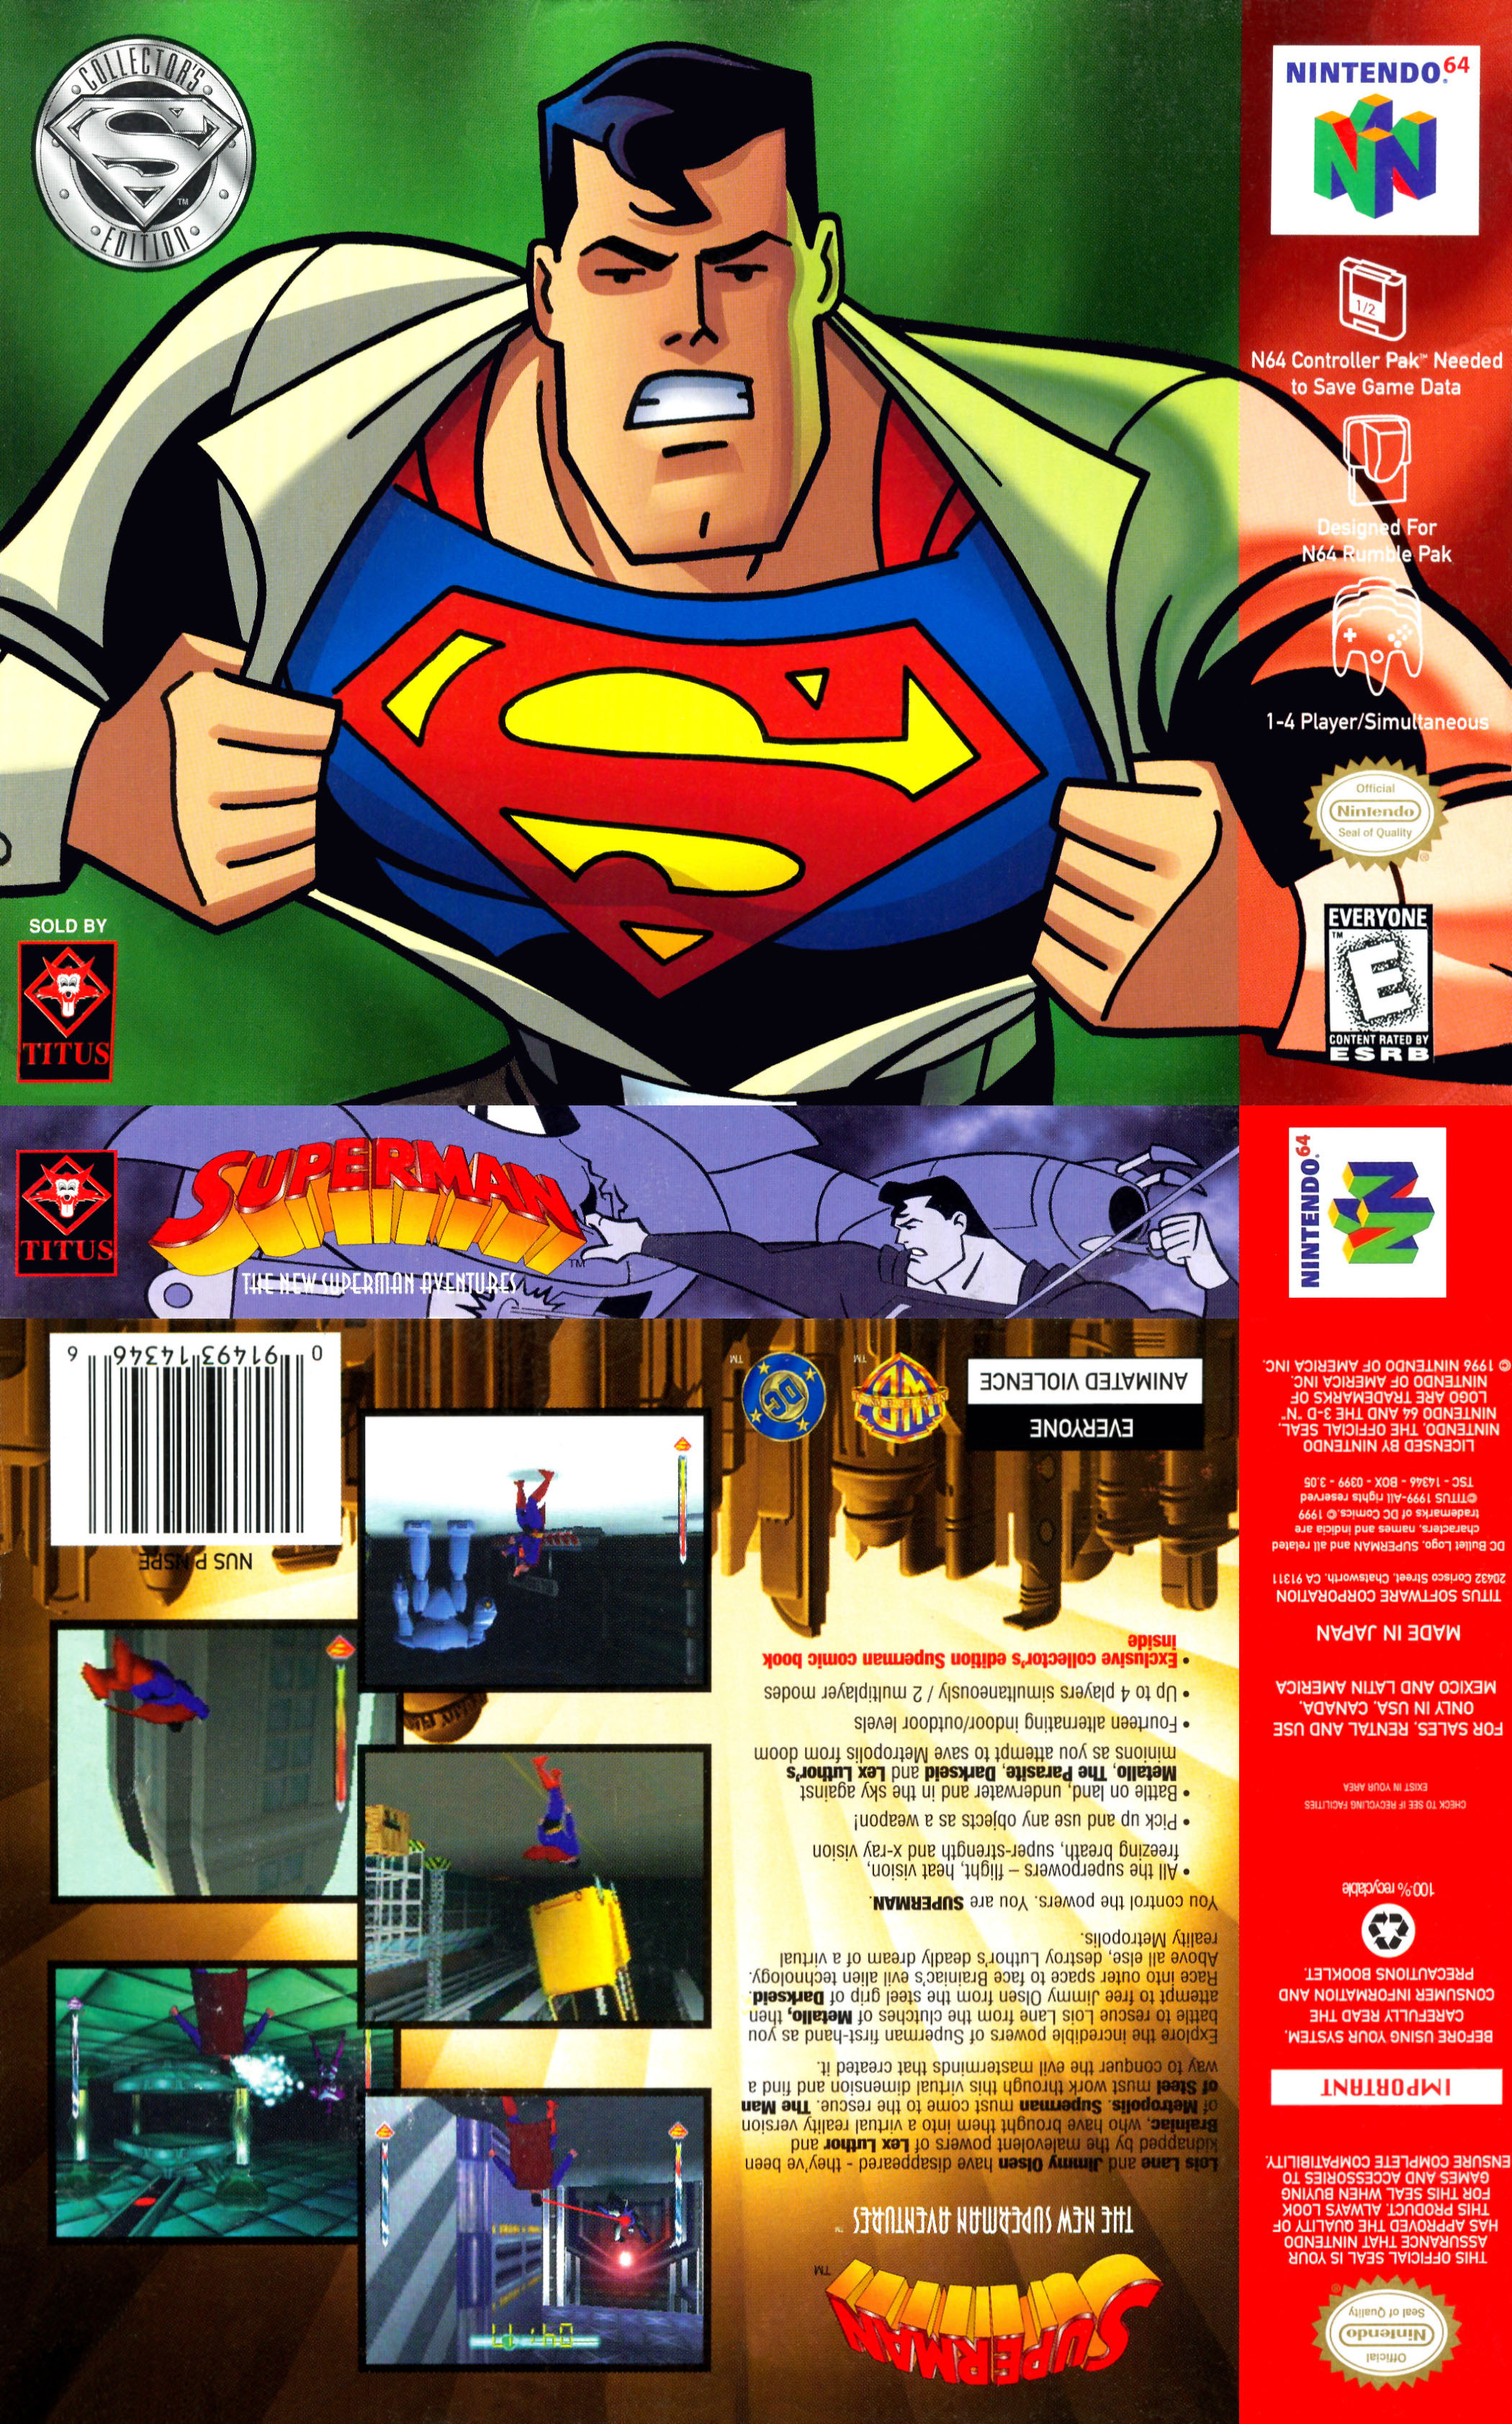 Super men games. Superman 64 (Nintendo 64). Superman ps1. Супермен игра. Супермен 1999 игра.